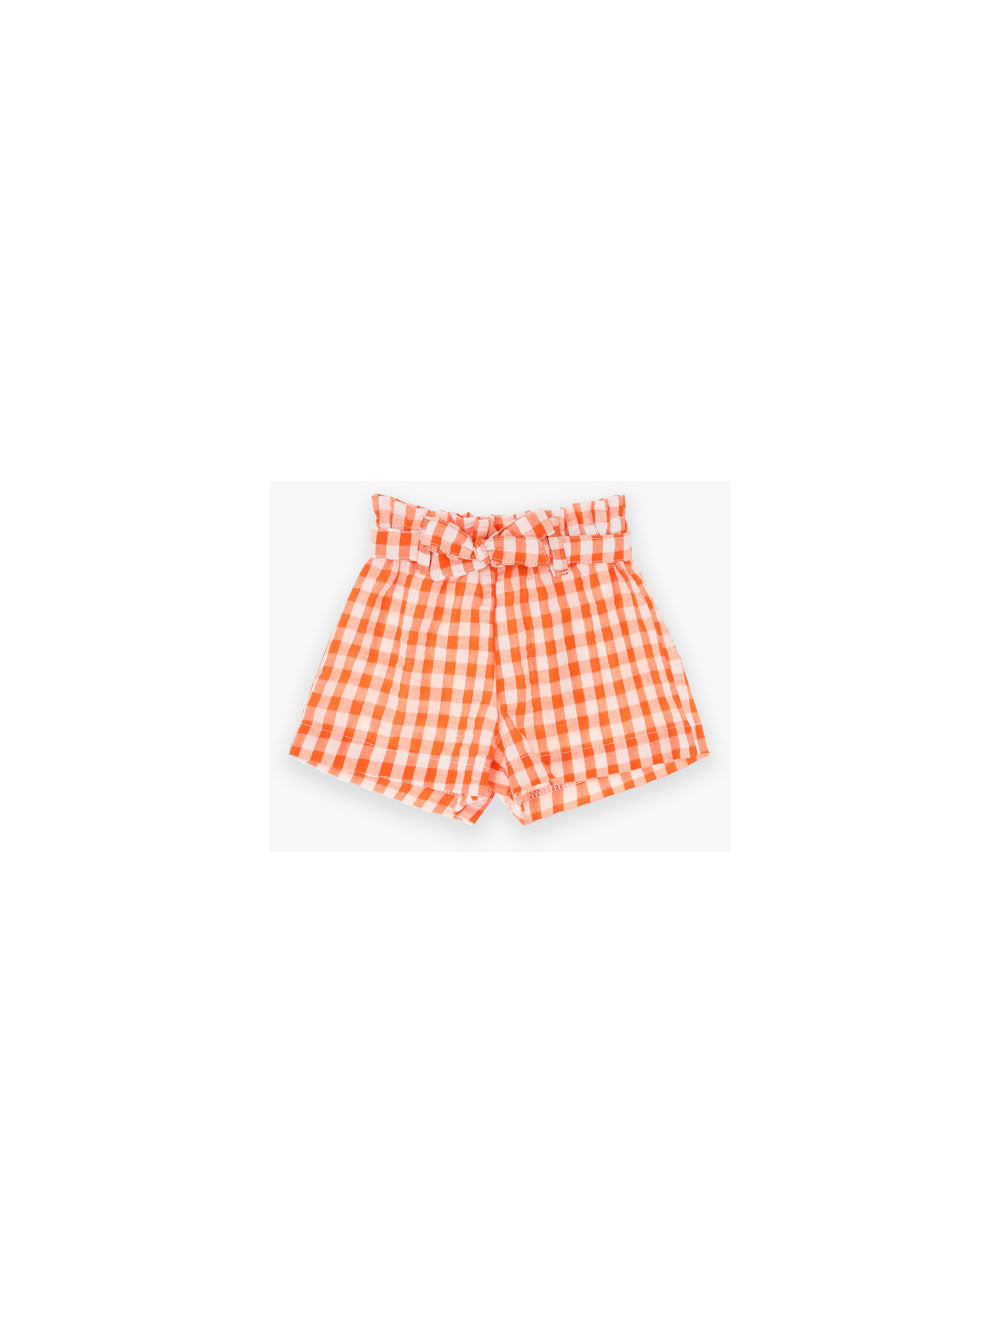 RE18273-Shorts-Mandarino